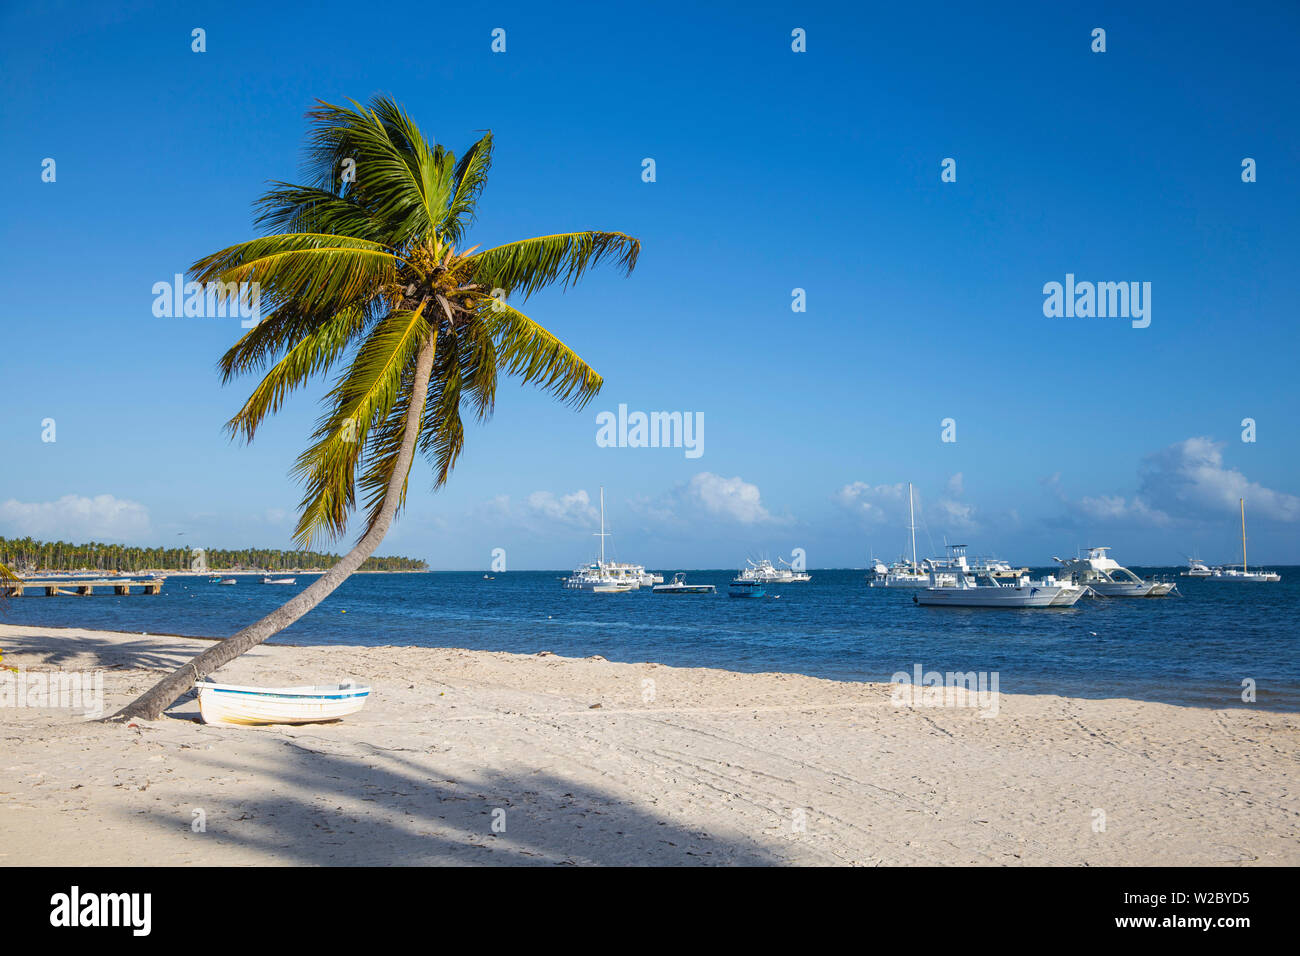 Dominican Republic, Punta Cana, Canoe under palm tree on Playa Cabeza de Toro Stock Photo